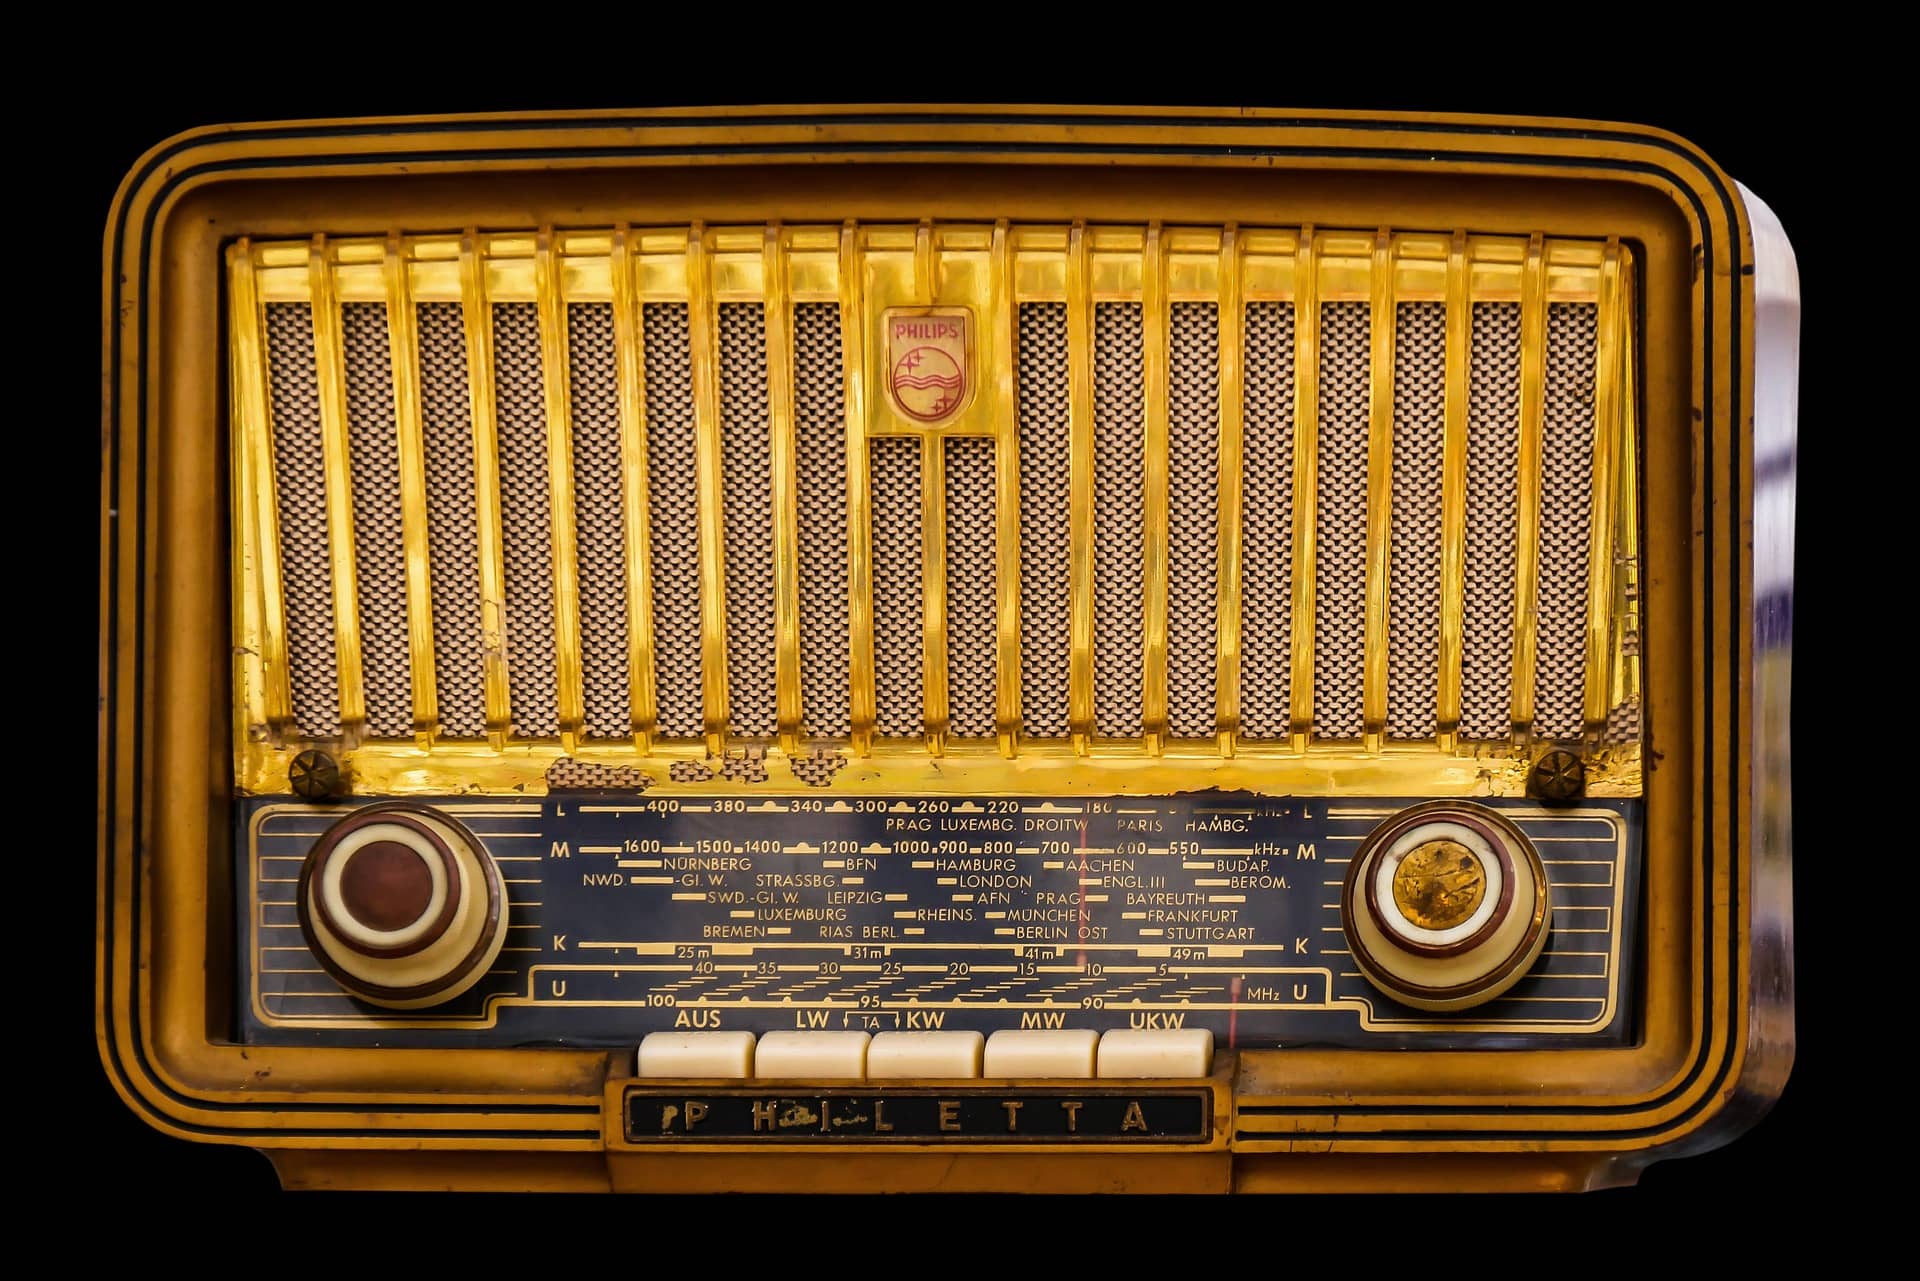 retro-style radio